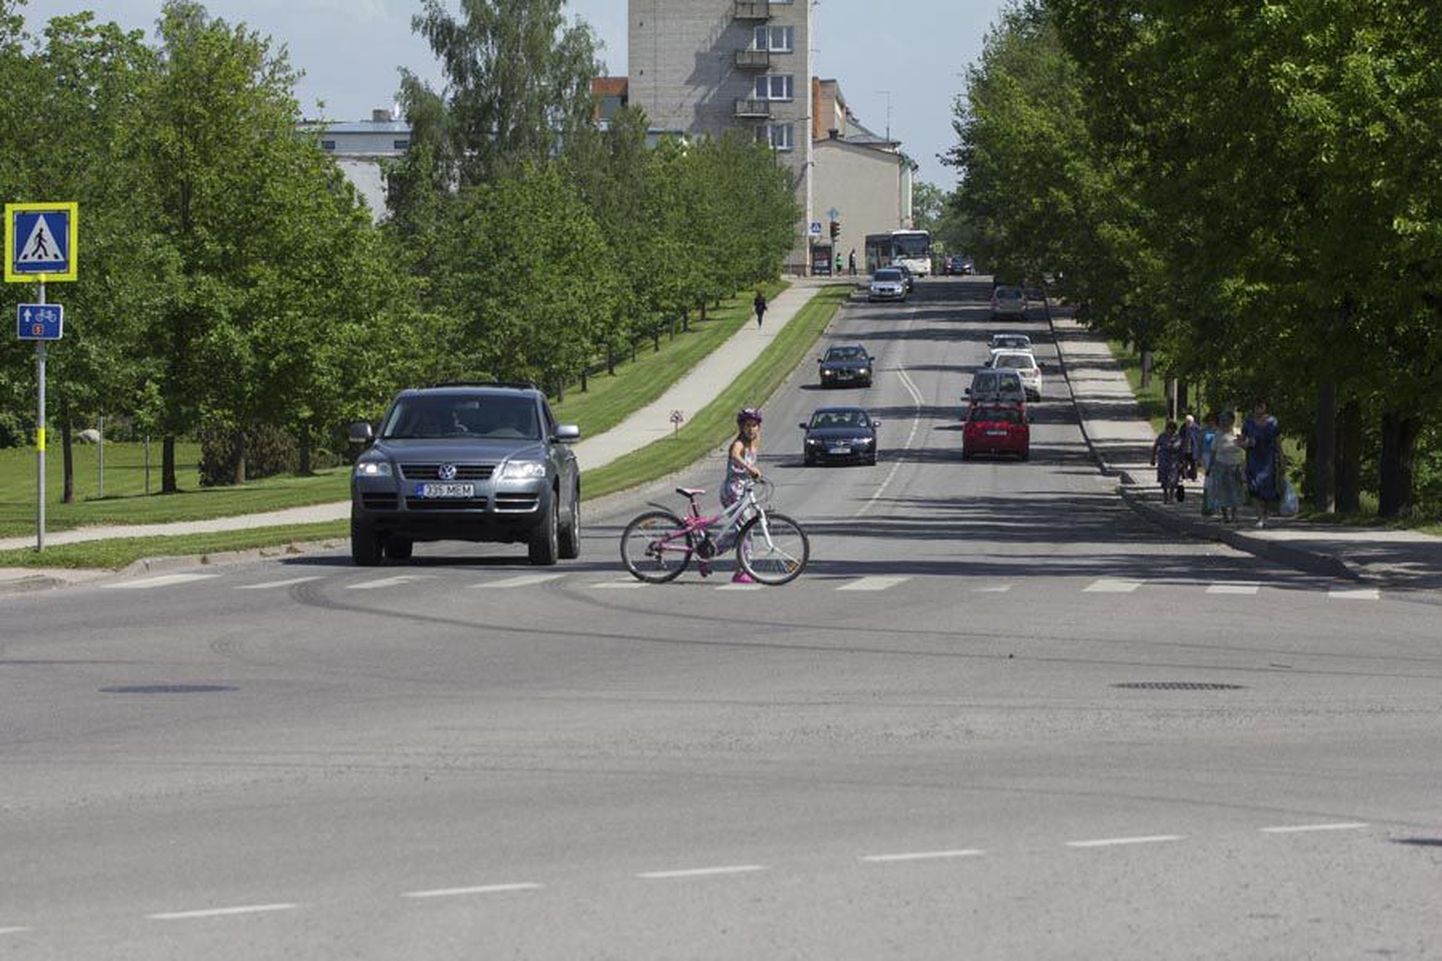 Kui Paalalinna ja Valuoja org oleksid tunneliga ühendatud, ei peaks jalgratturid enam autotee ületamiseks ülekäigurada kasutama.